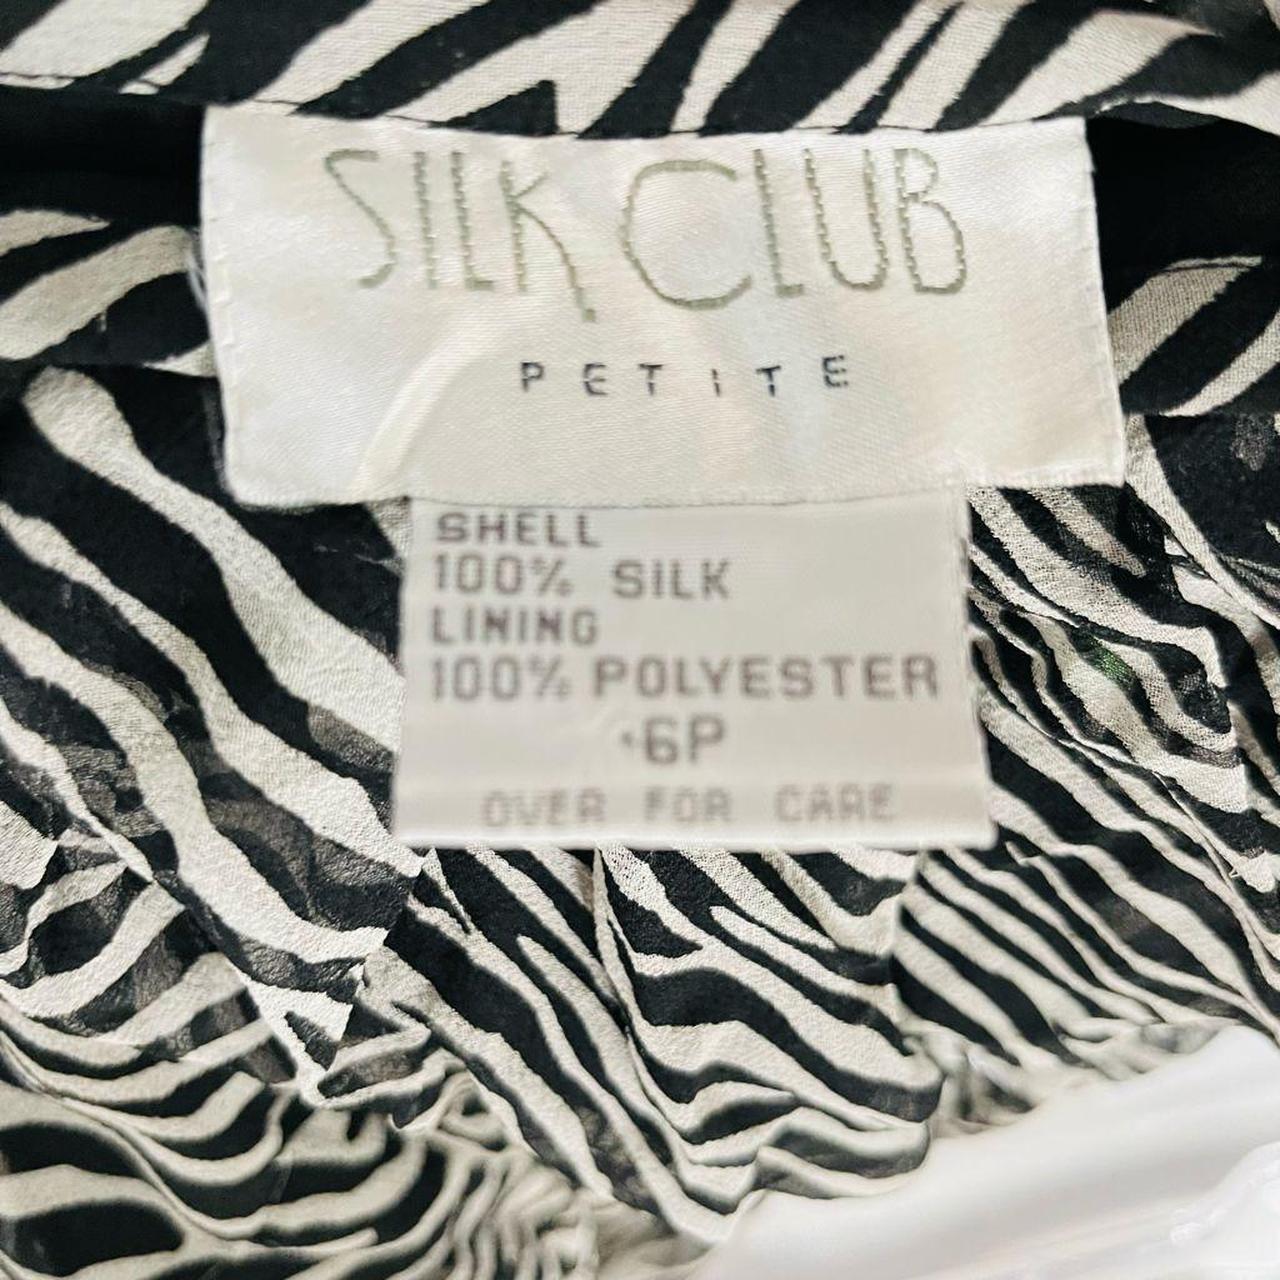 Product Image 4 - Vintage Silk Club Petite 100%